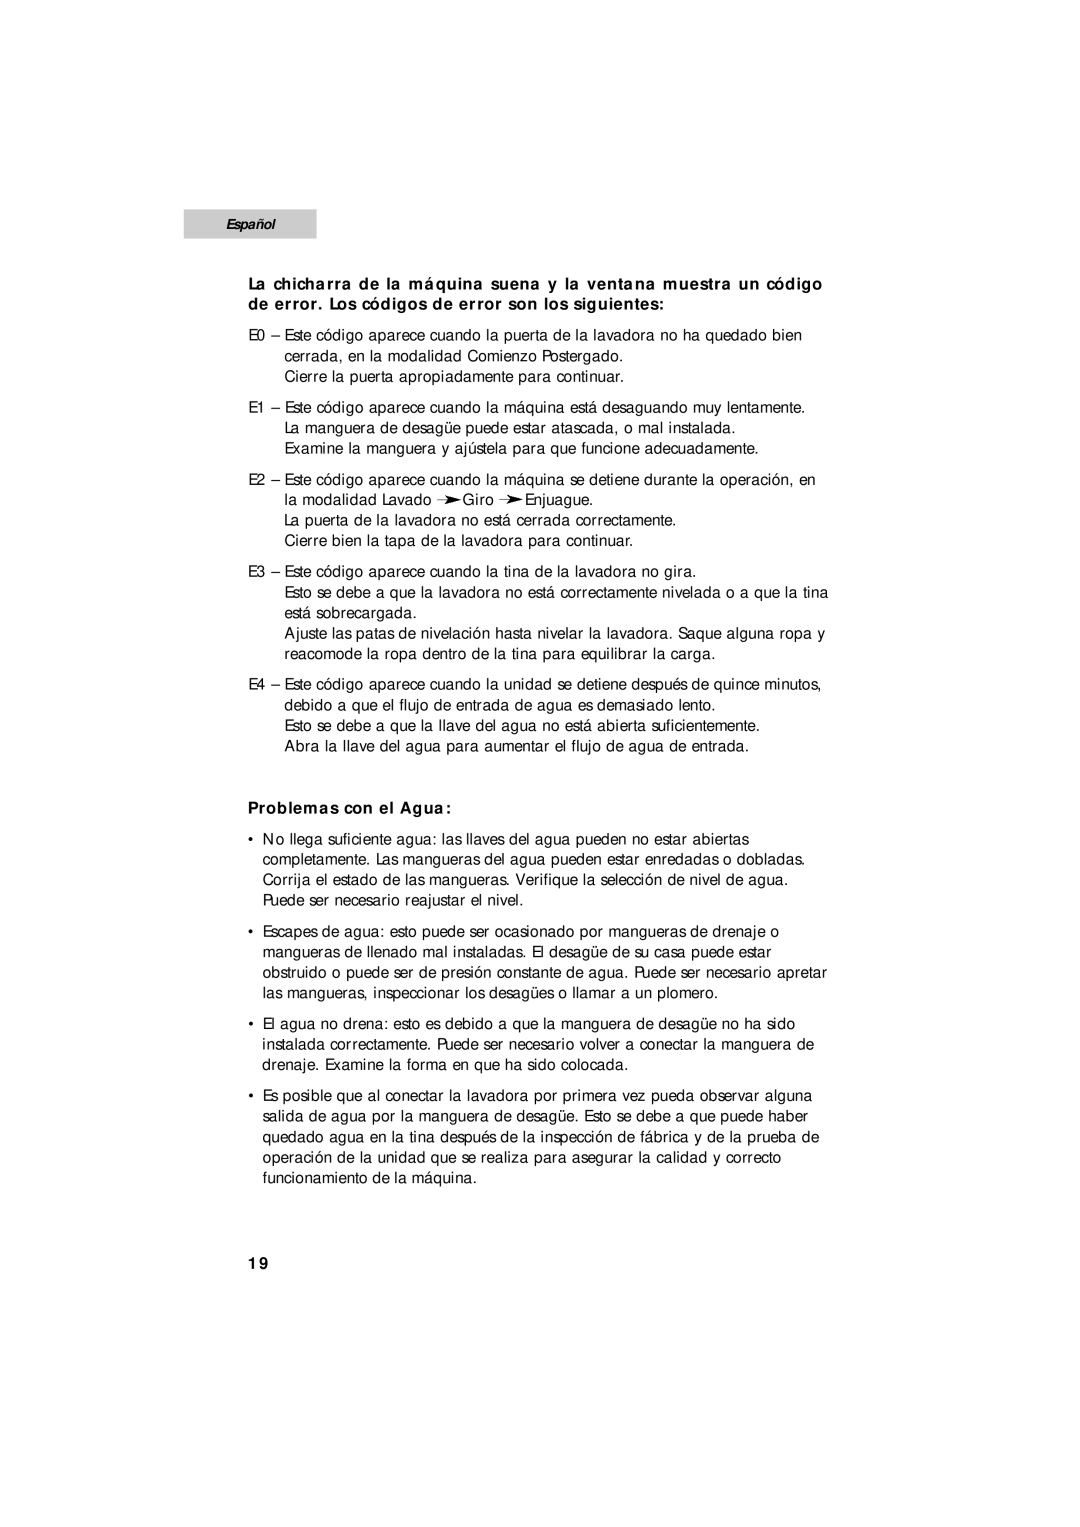 Summit SPW1200P user manual Español, Problemas con el Agua 